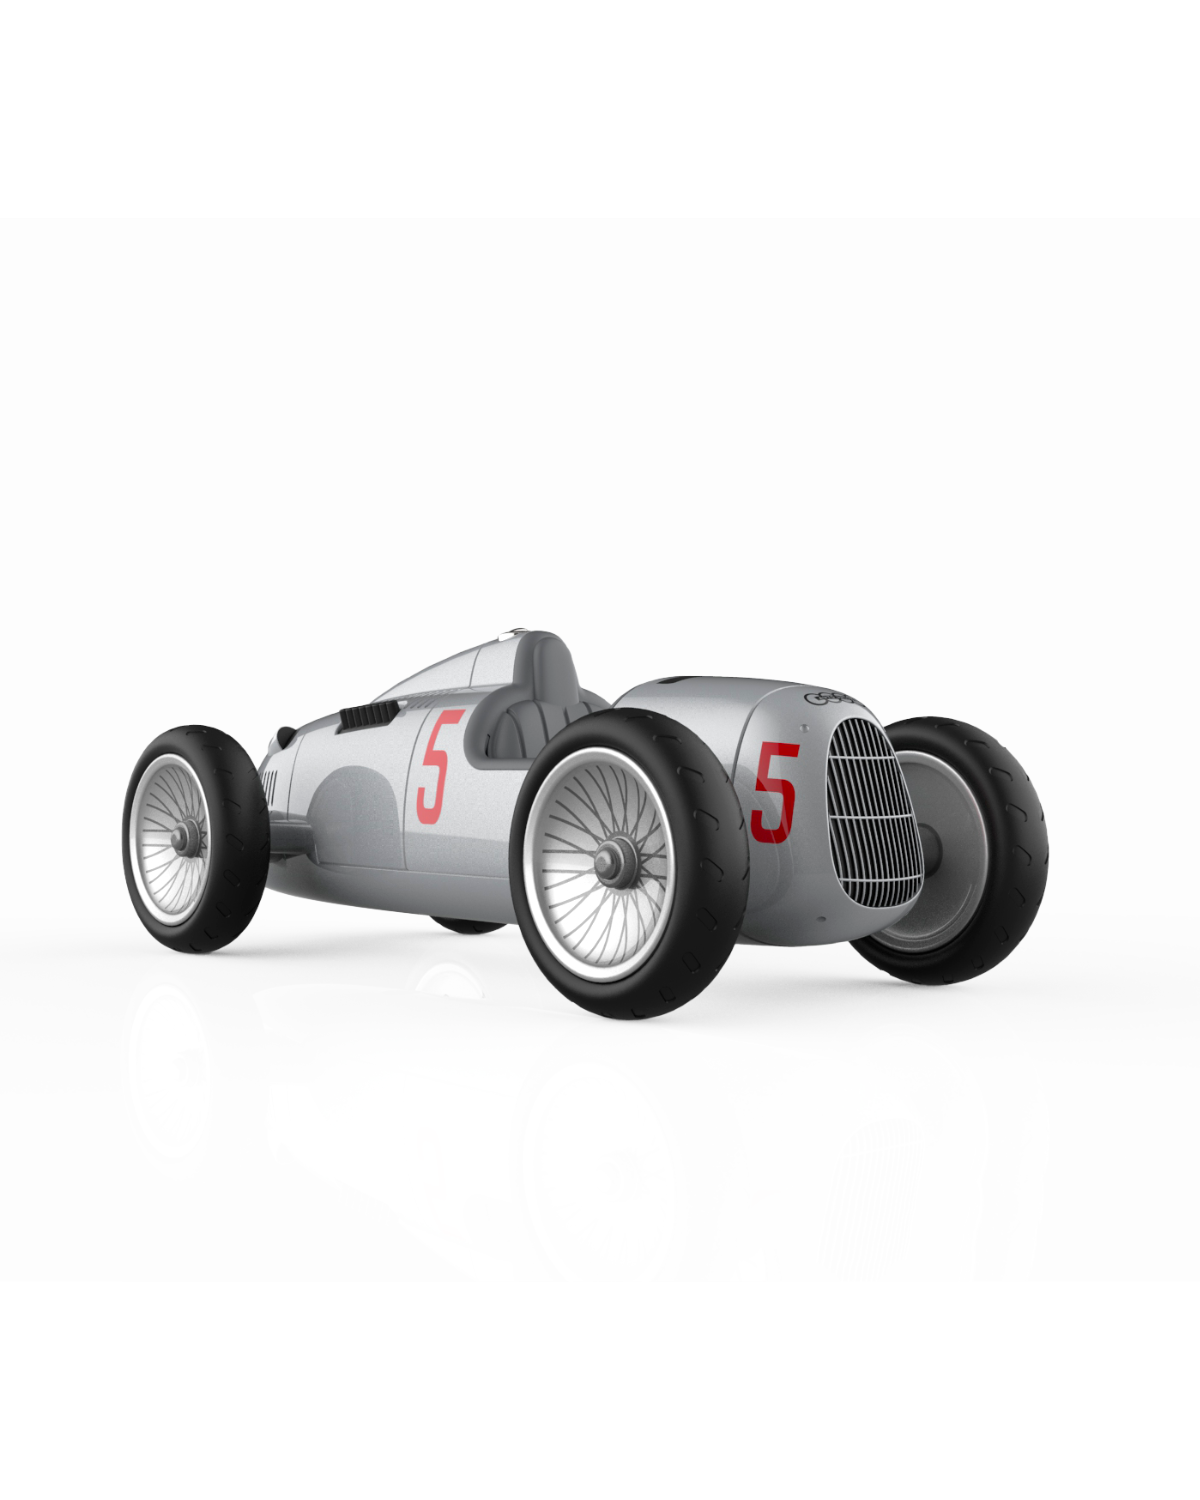 Baghera AUDI-licensed Racing Toy Car 